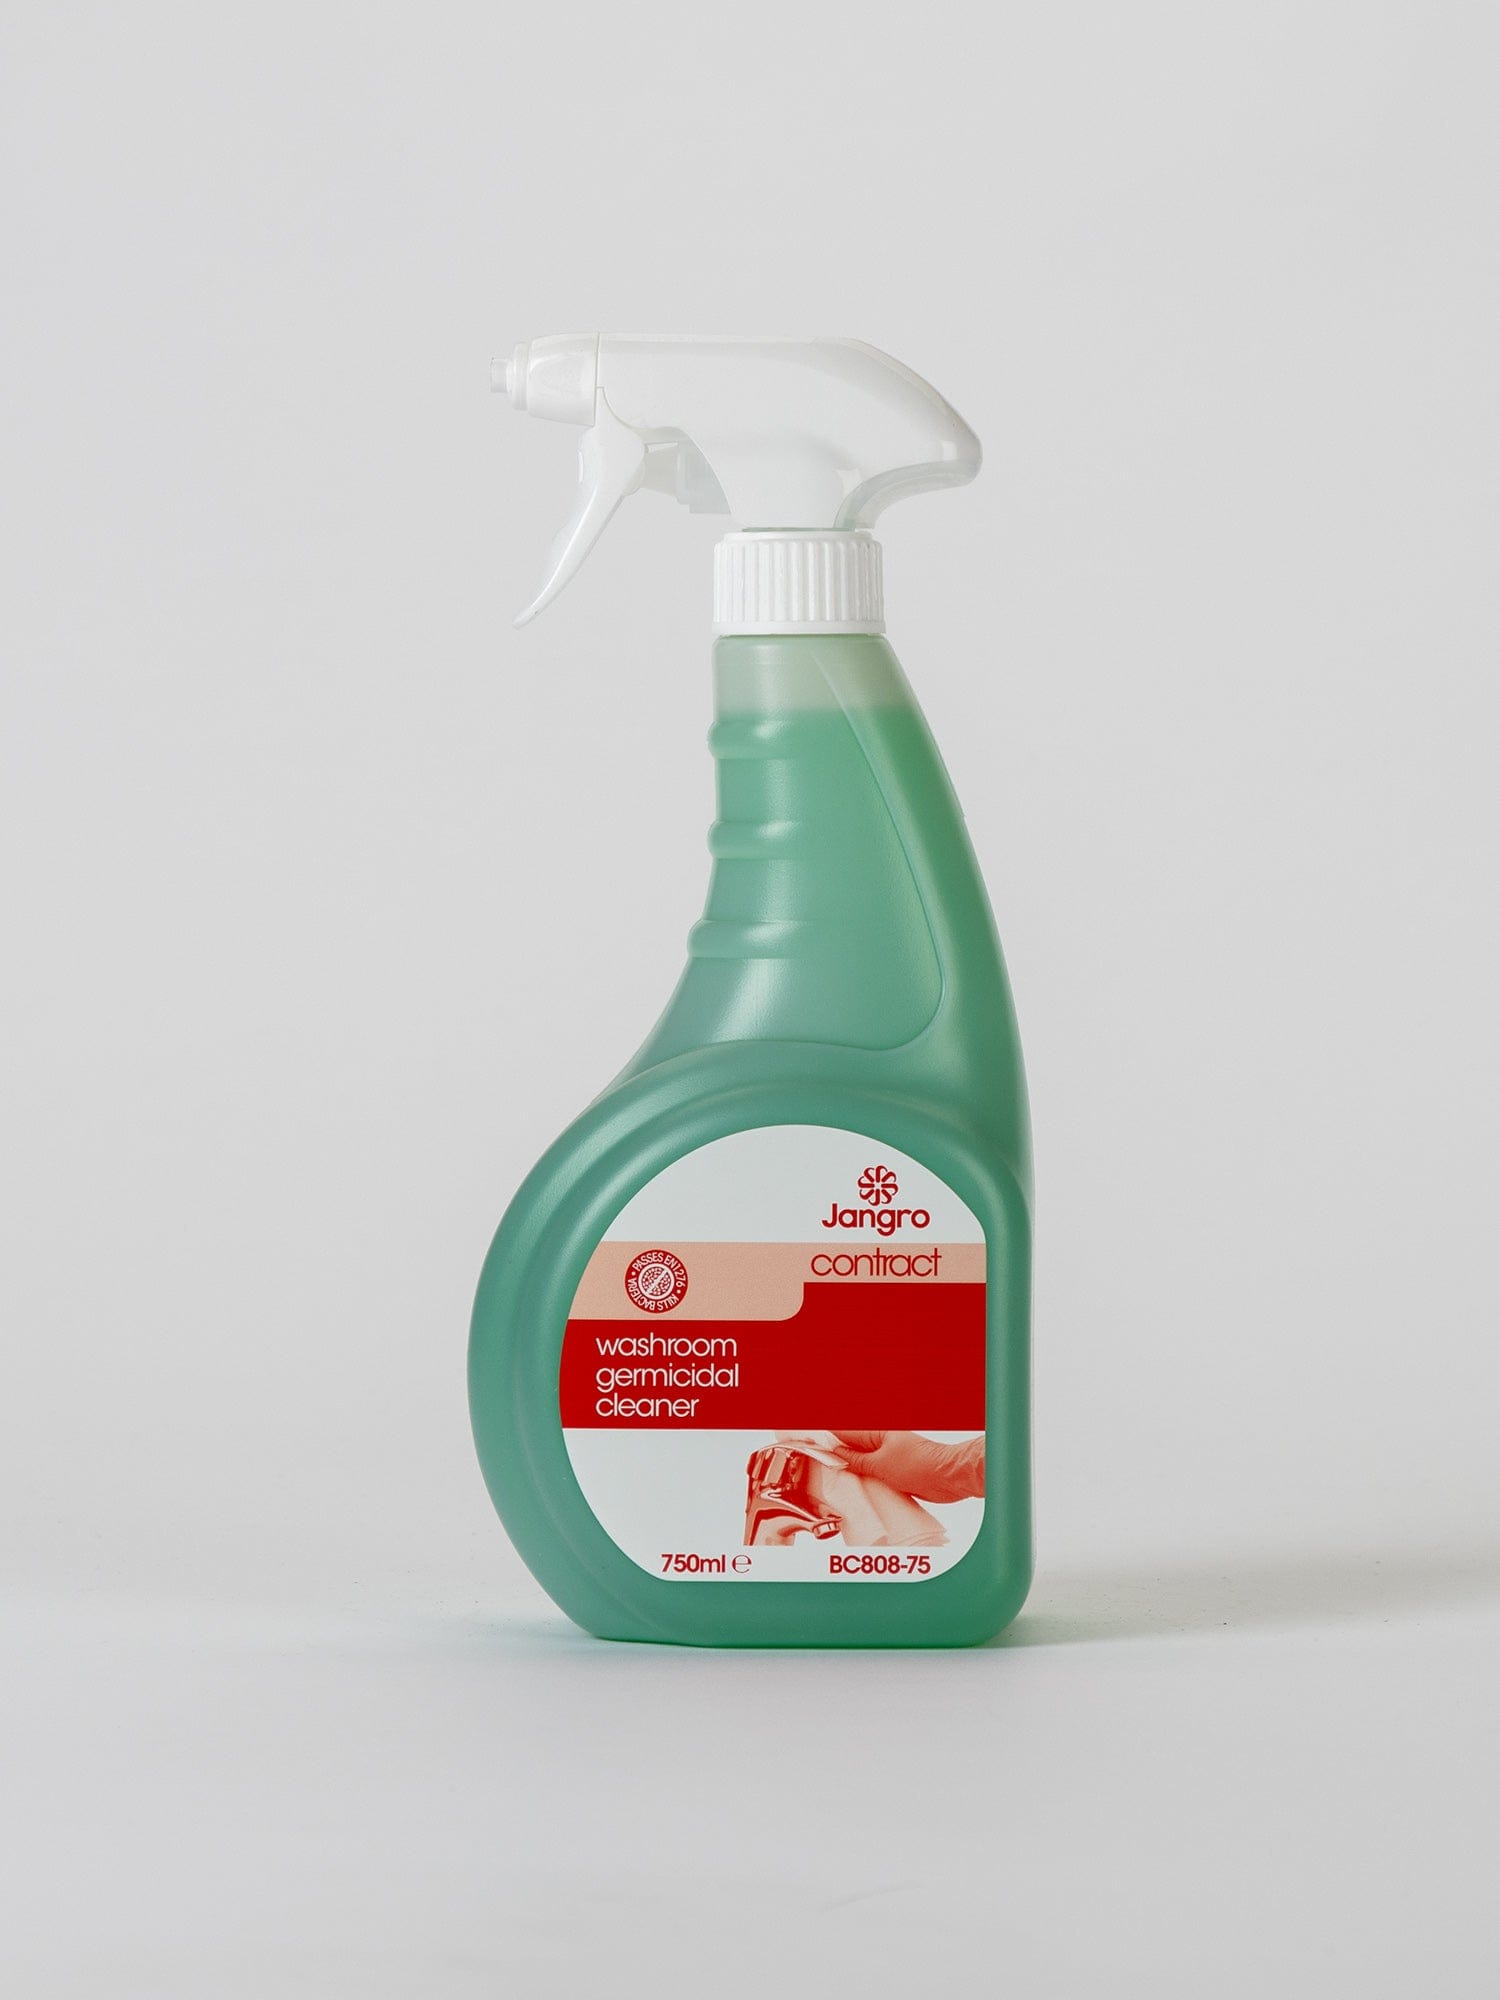 trigger spray washroom germicidal cleaner